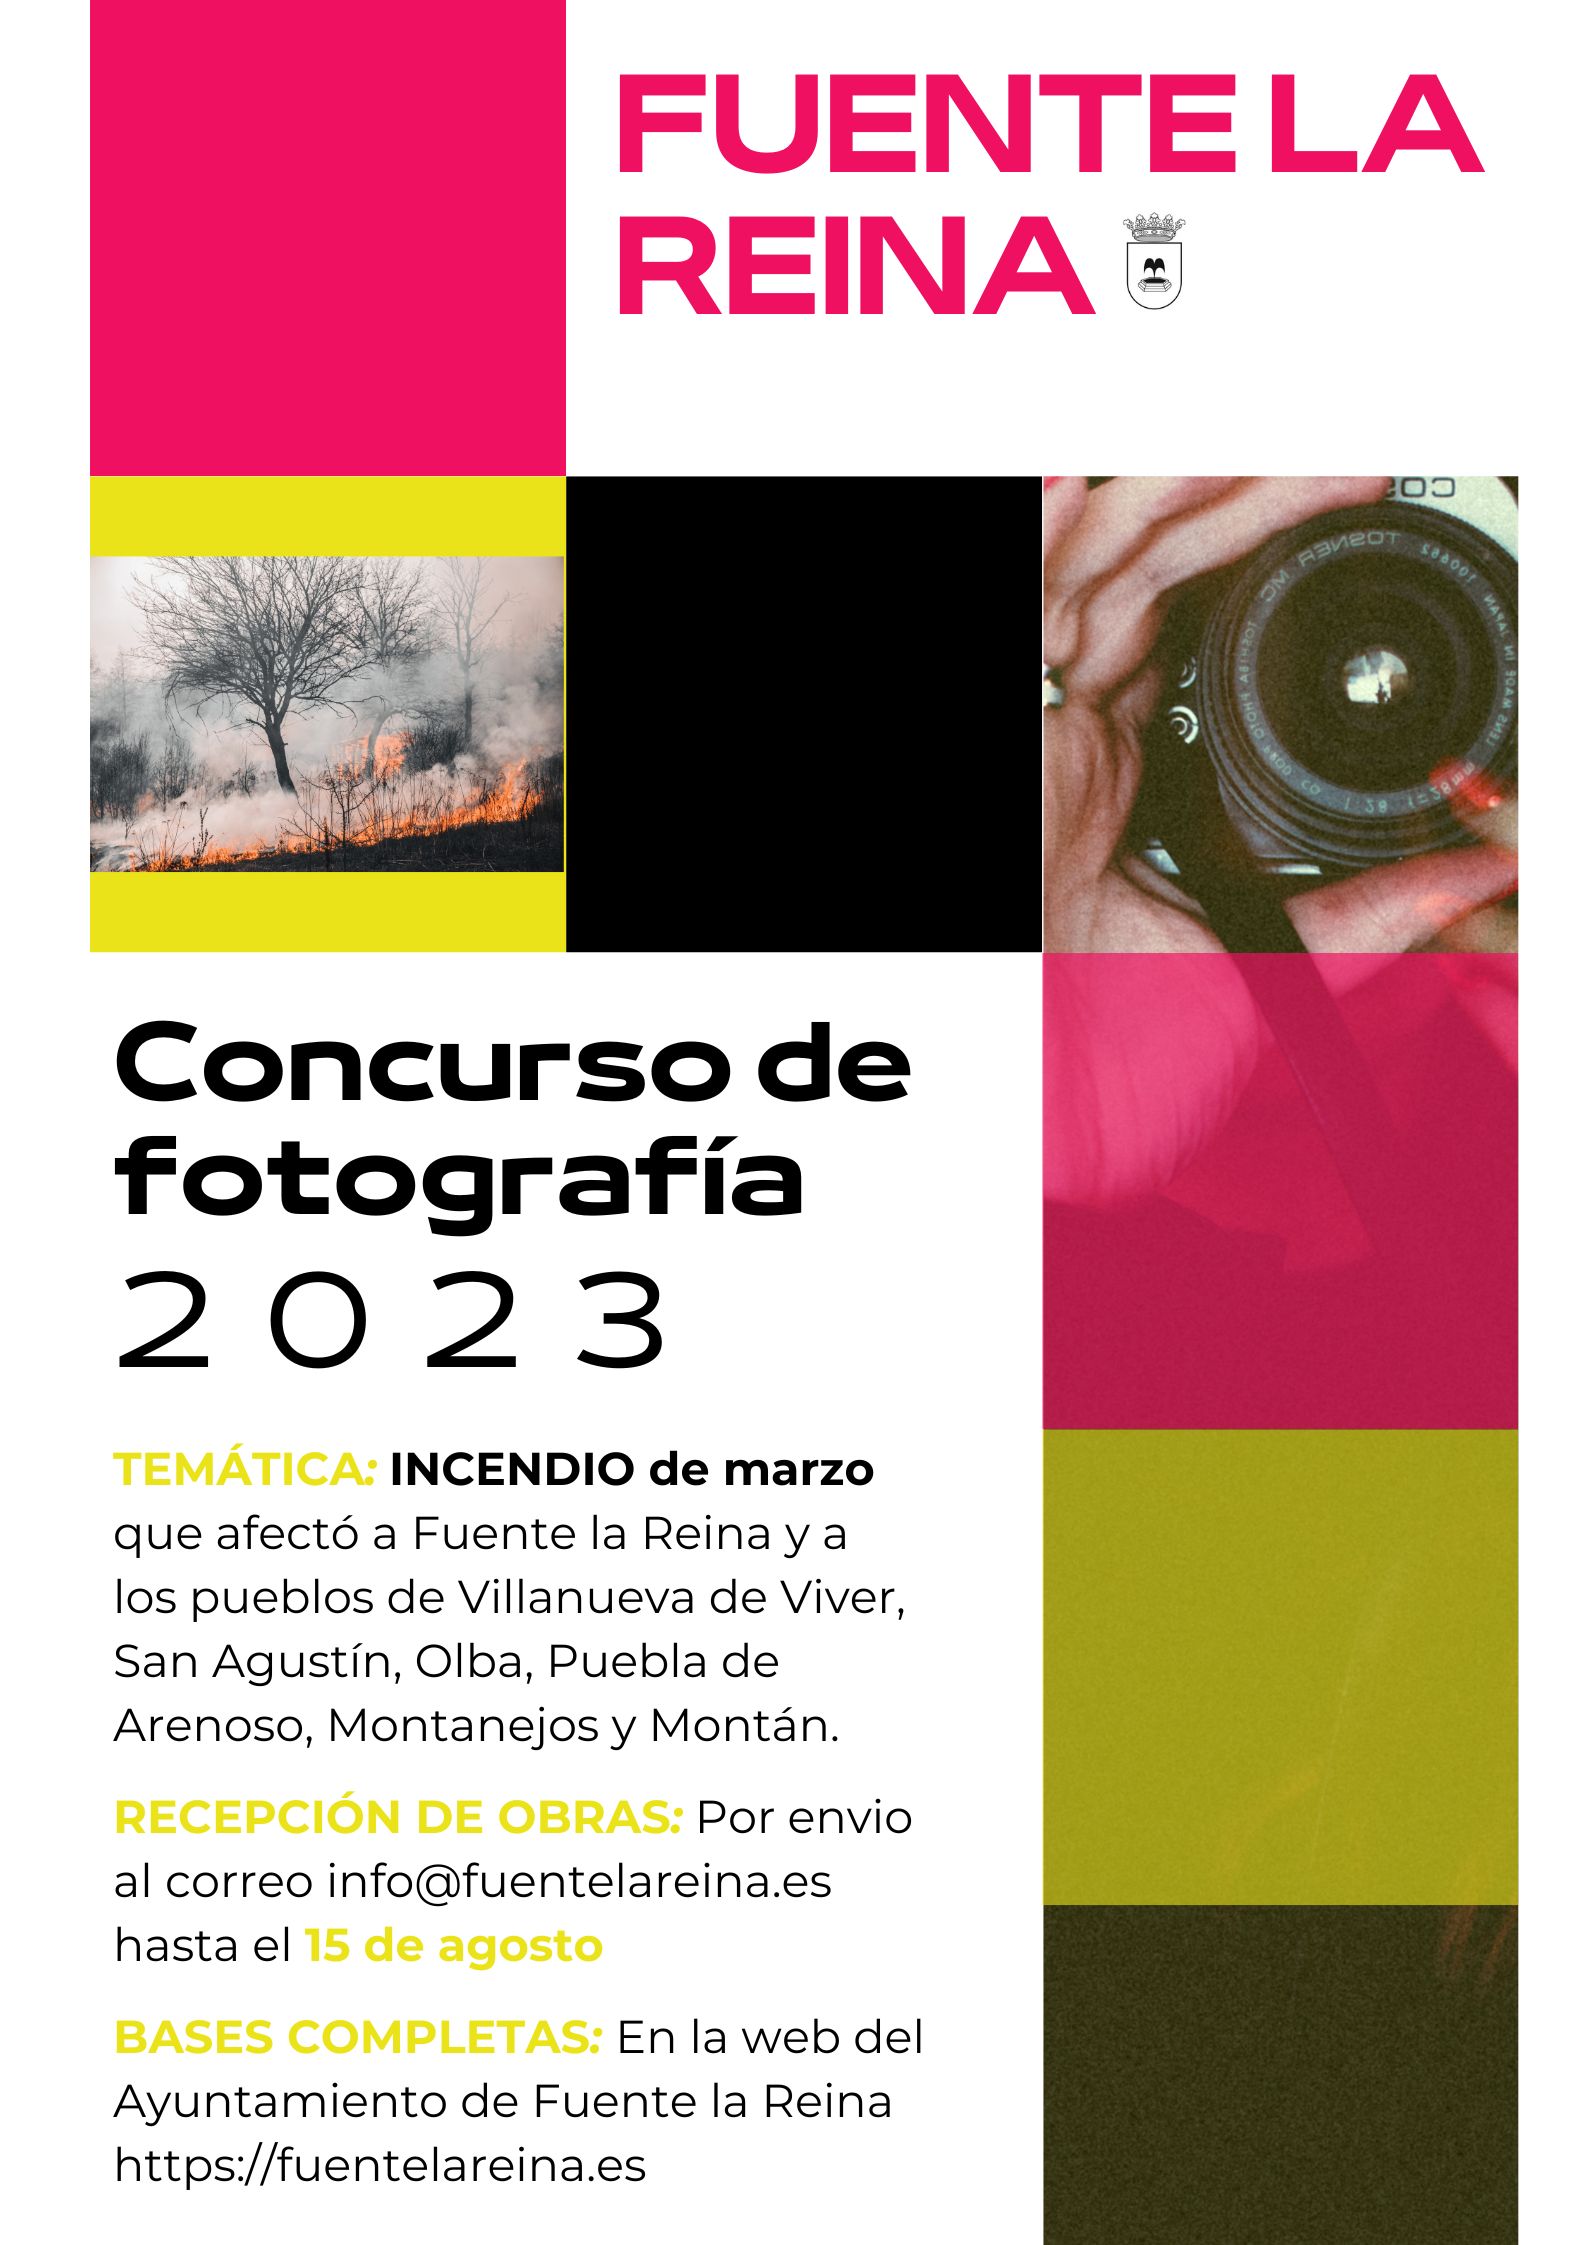 CONCURSO DE FOTOGRAFÍA DE FUENTE LA REINA 2023